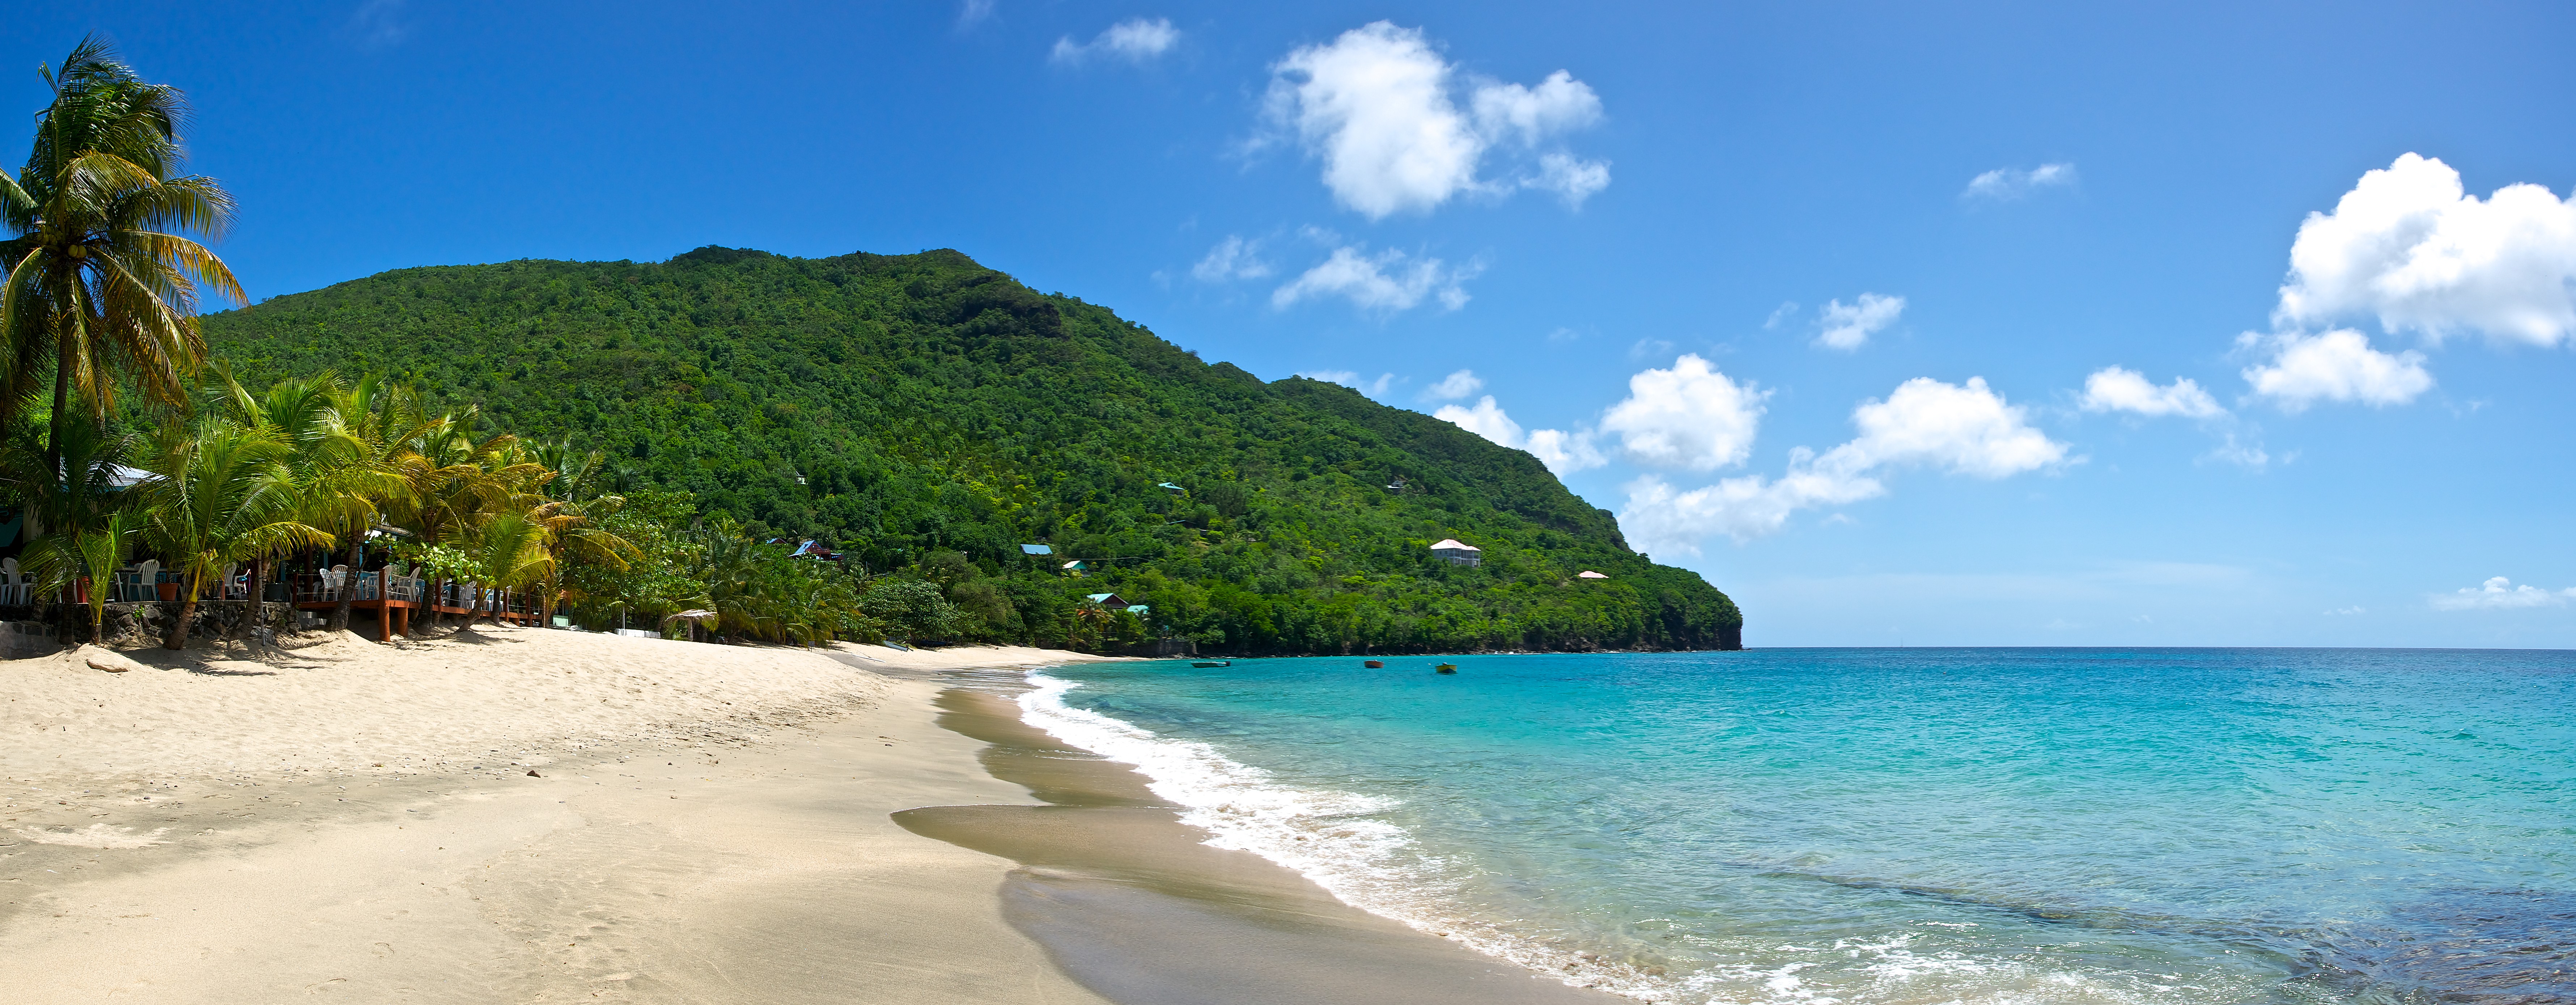 5 razones para visitar San Vicente y las Granadinas 